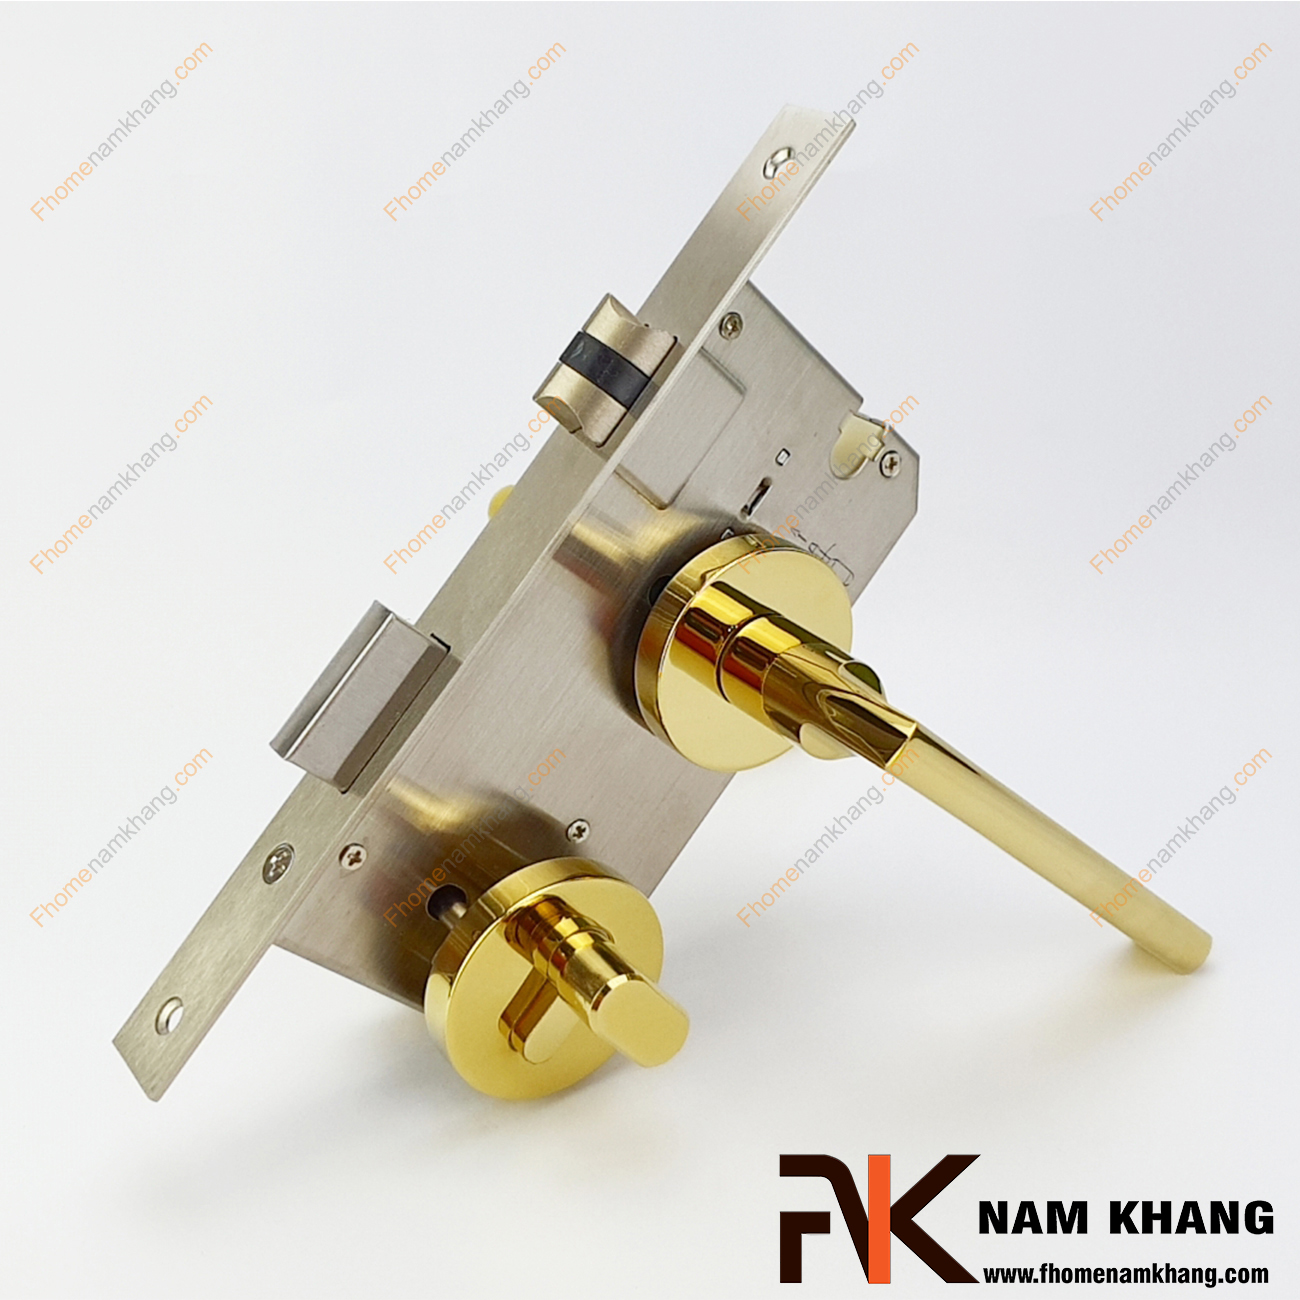 Khóa cửa phân thể bằng hợp kim cao cấp NK571-PVD có thiết kế phần ốp khóa và tay gạt riêng biệt, khá nhỏ gọn và tạo được sự nổi bật độc đáo của một dòng khóa cửa.